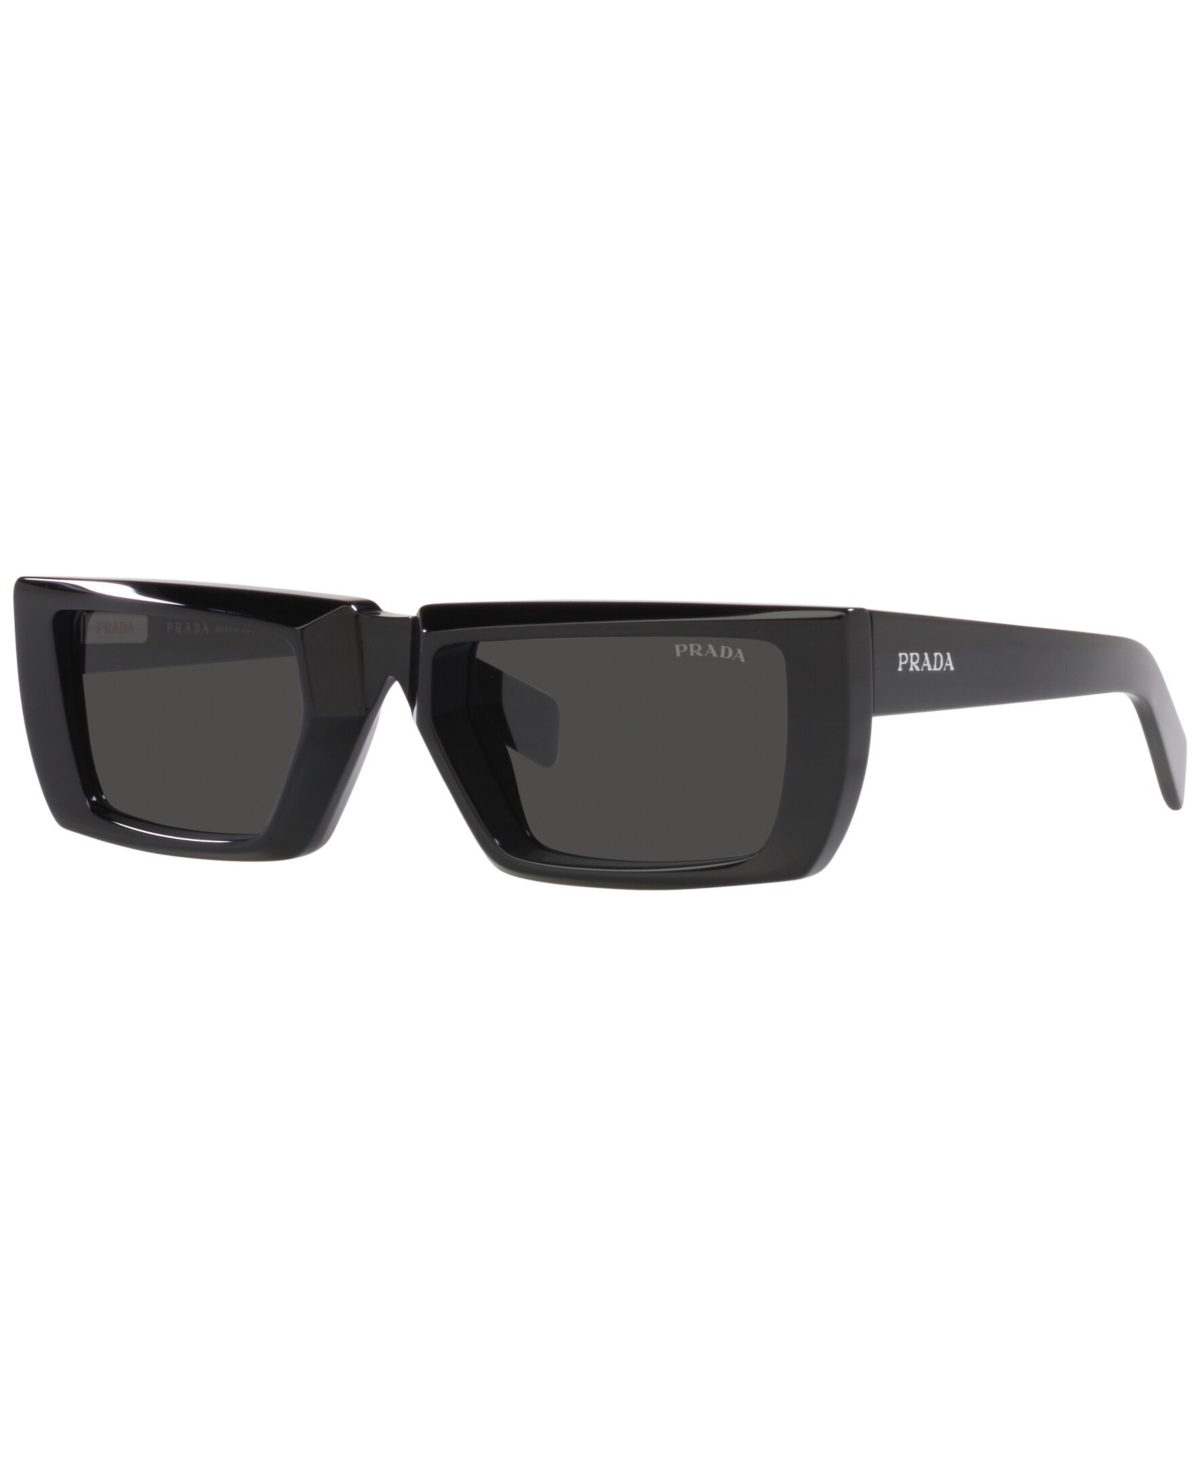 Prada Men's Sunglasses, Runway 55 In Black